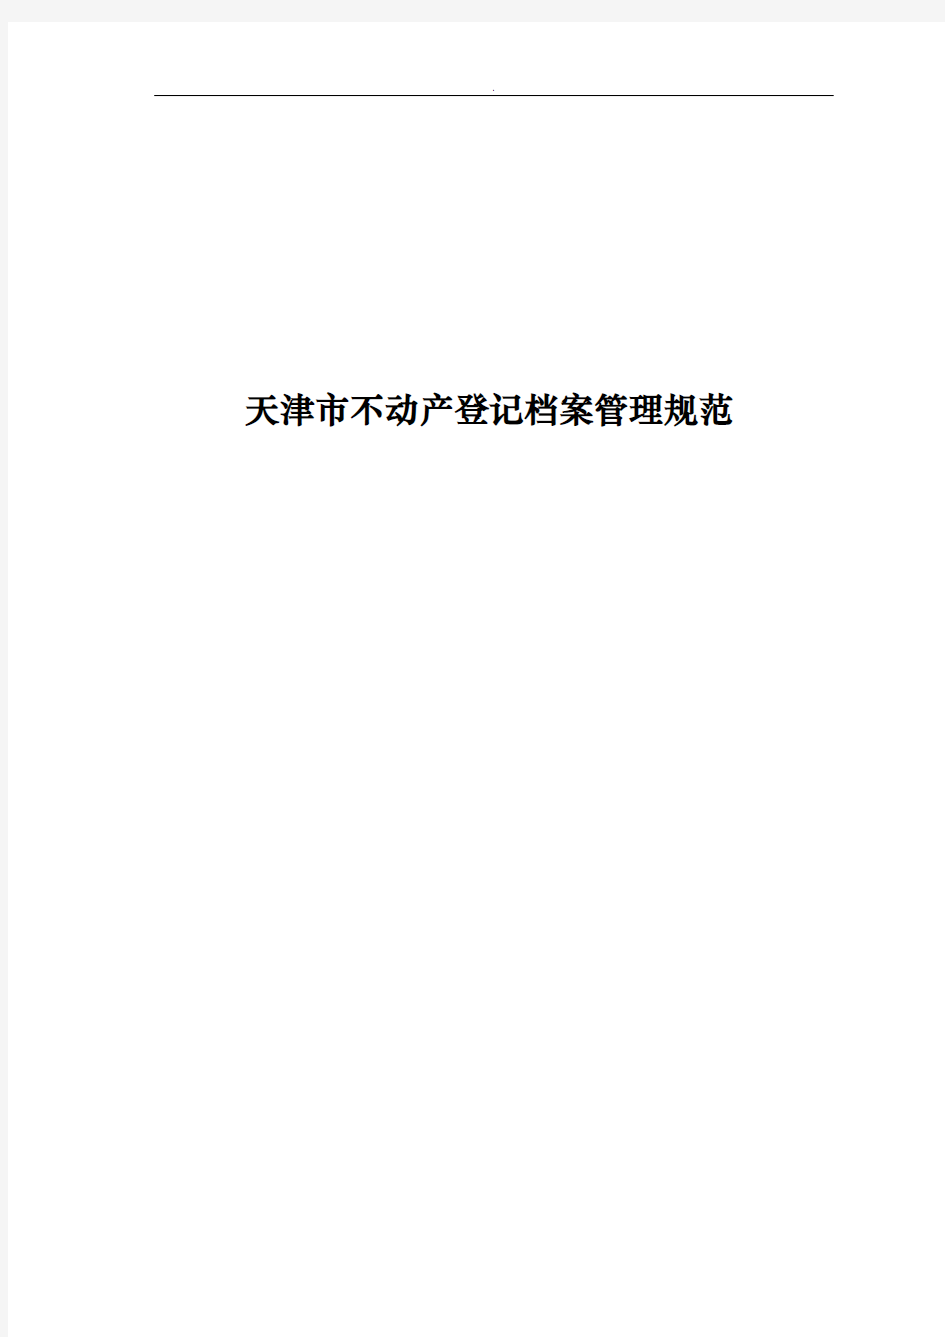 天津市不动产登记档案管理规范